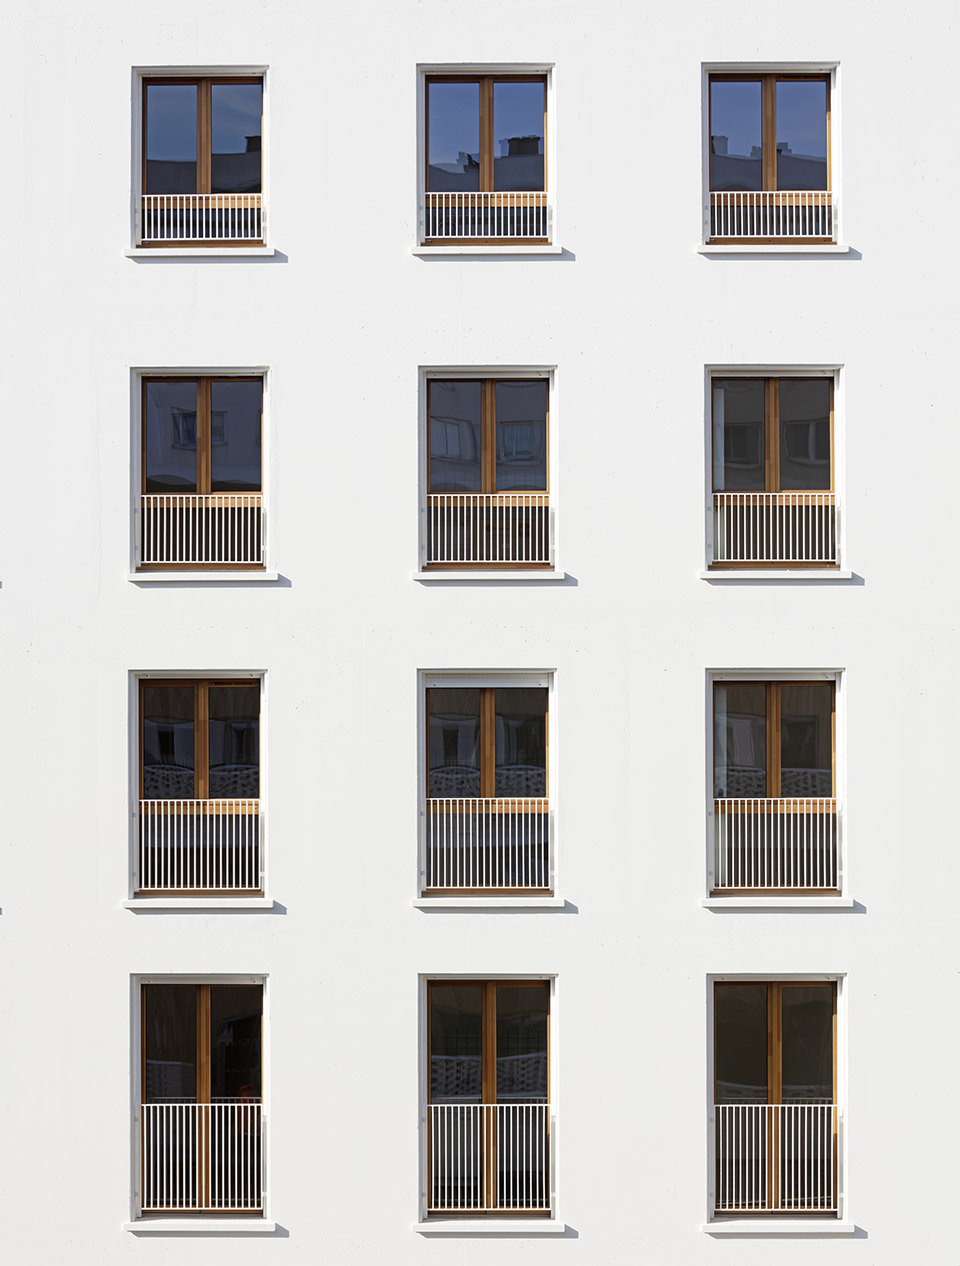 71社会住宅群，巴黎/多样化的居住空间和社区生活-94